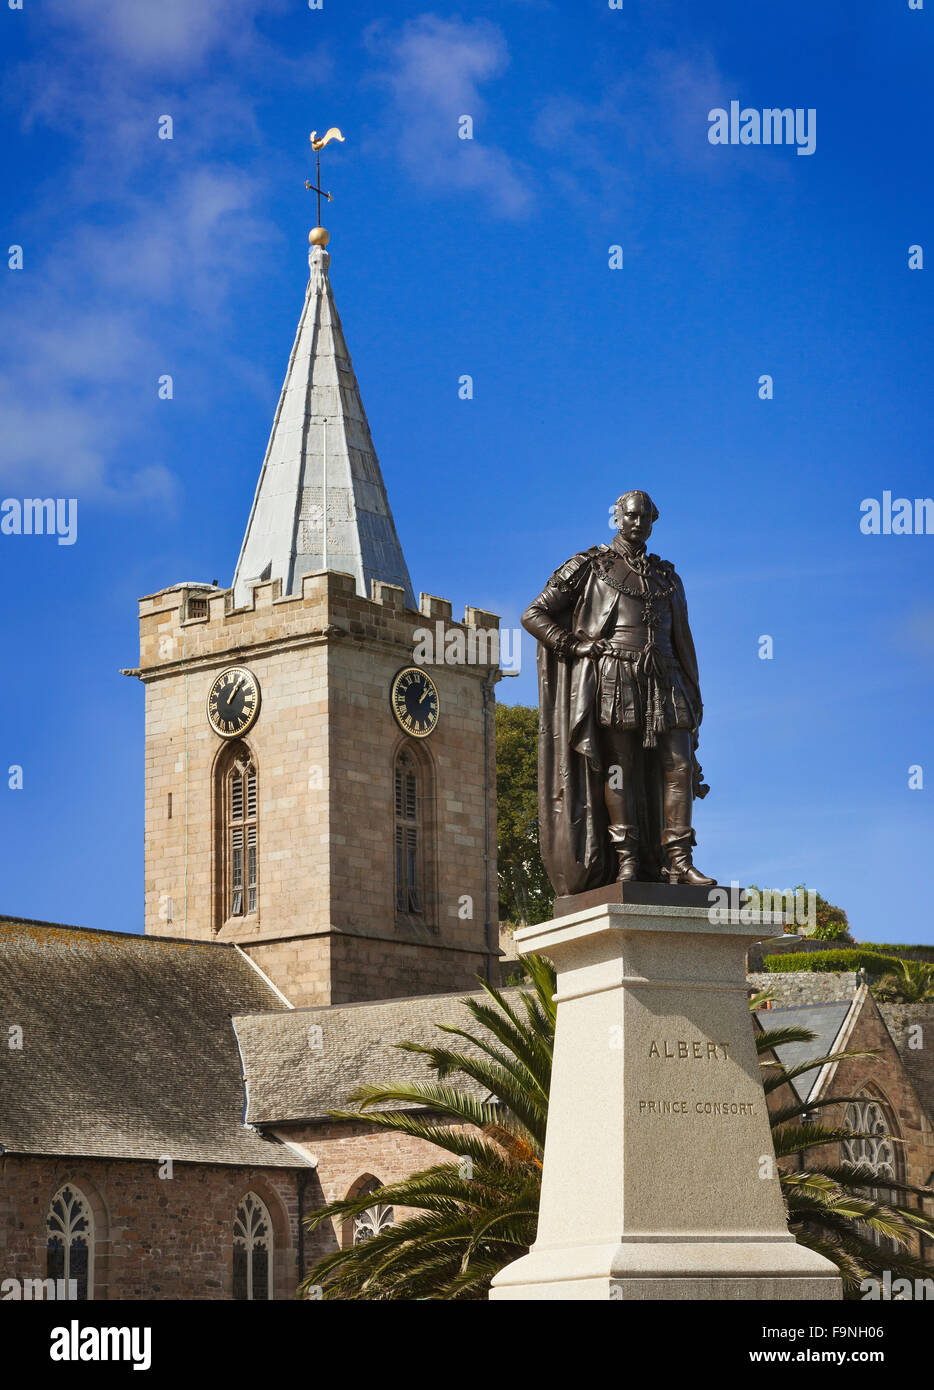 Statua del Principe Albert, città dietro la chiesa di Saint Peter Port Guernsey, nelle Isole del Canale. Bronzo su un piedistallo di granito. Foto Stock